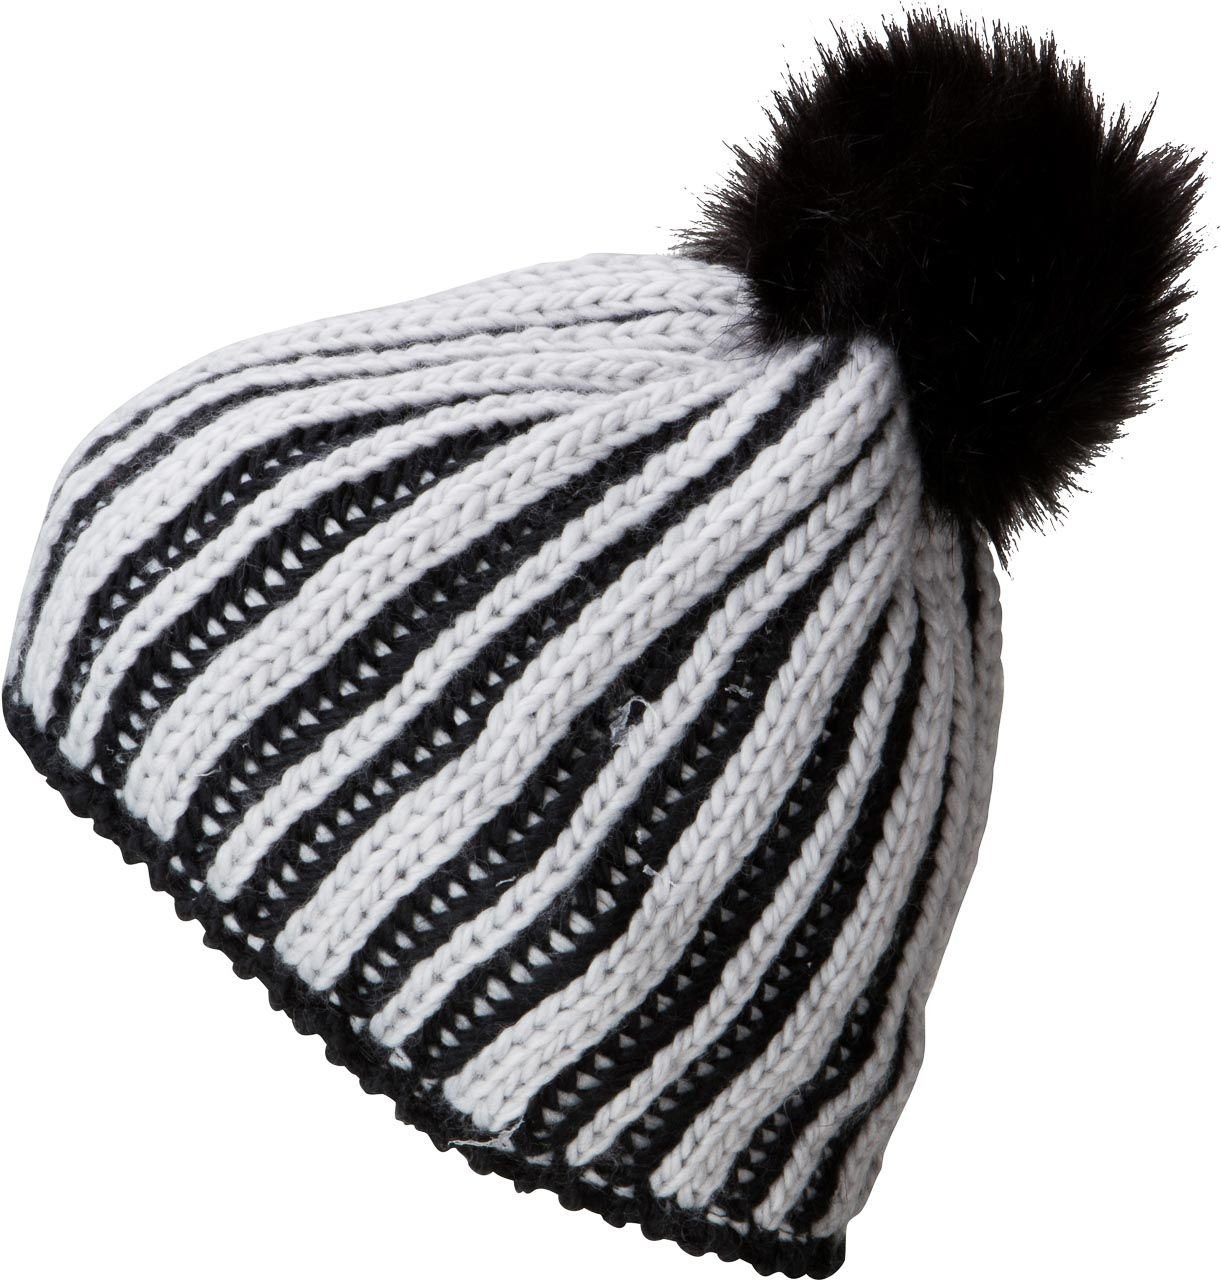 Myrtle Beach silver/black mit Wintermütze Fleeceband Innenseite Strickmütze Jahreszeit kalte Damen für MB7107 die